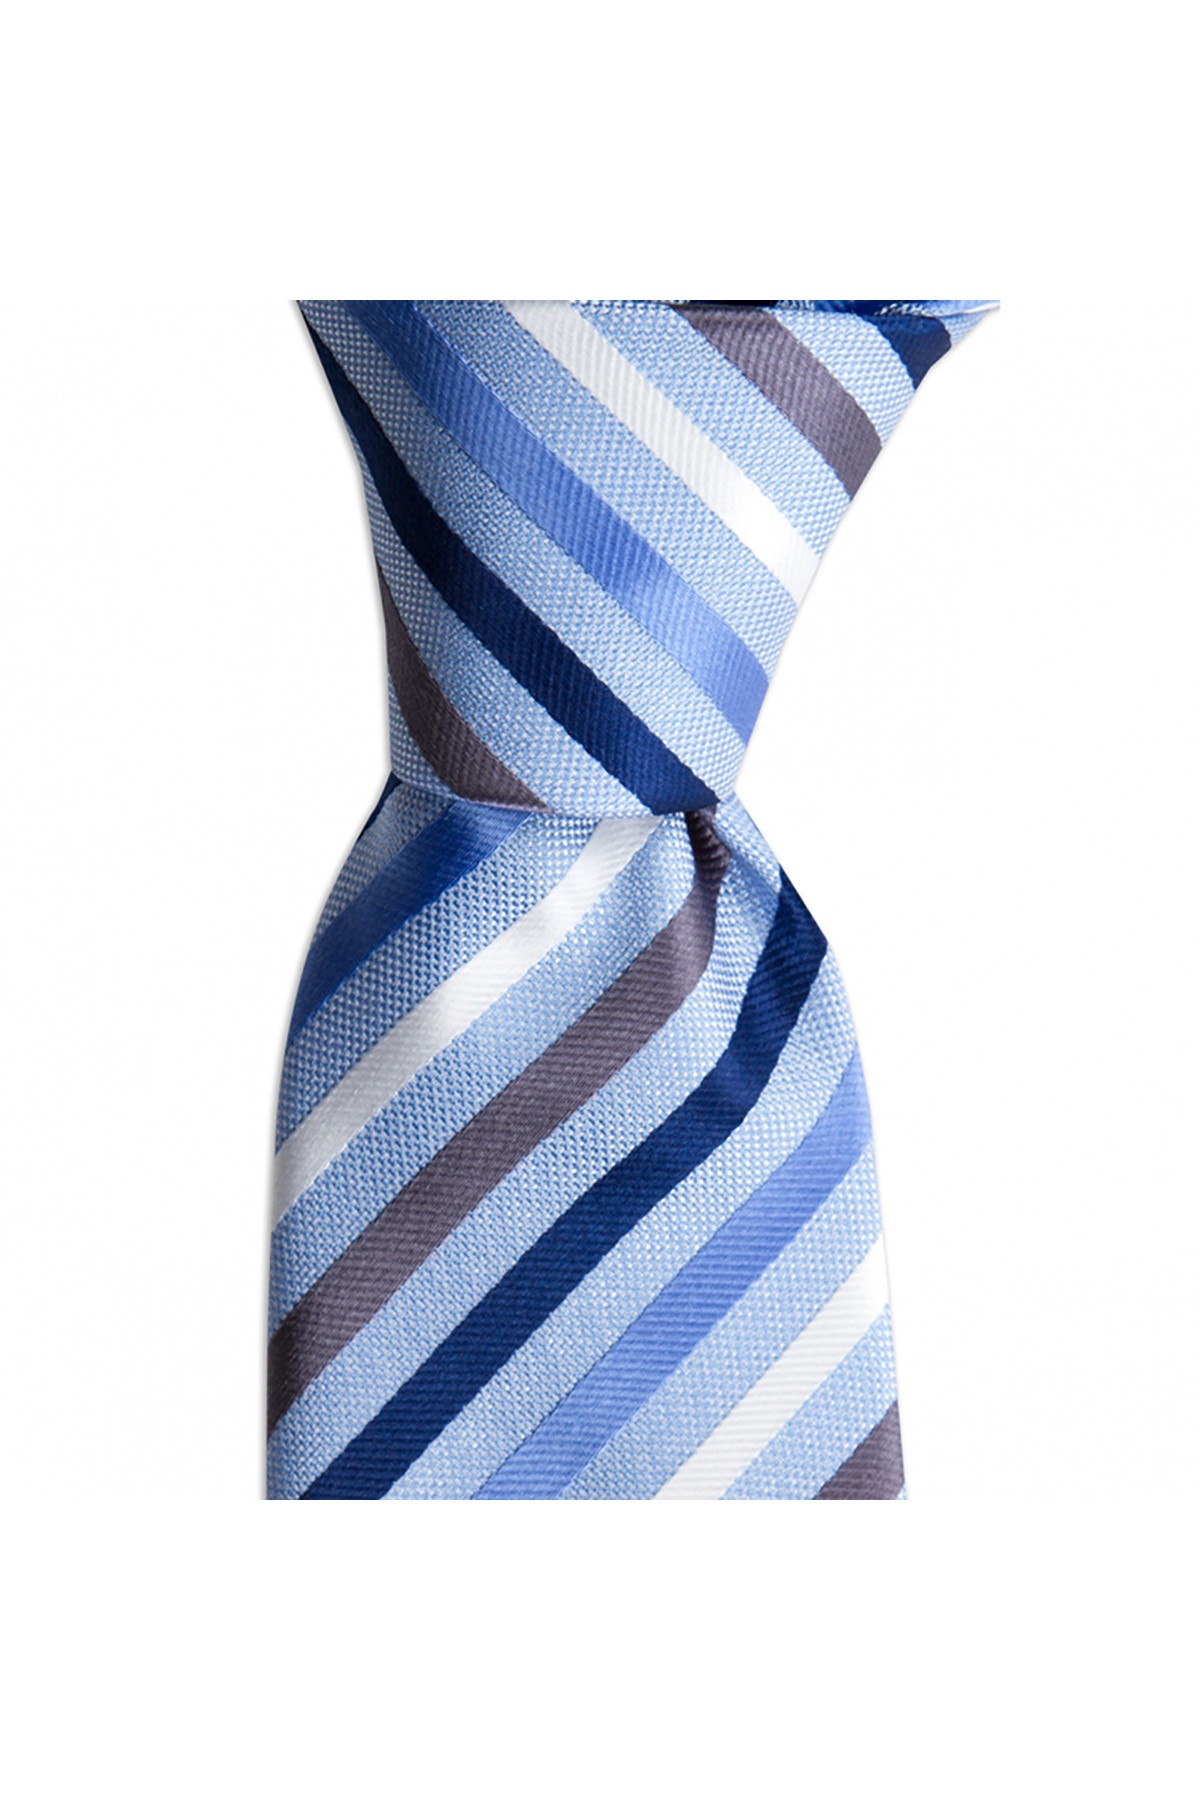 Çok çizgili 8 cm genişliğinde klasik kravat - Açık mavi